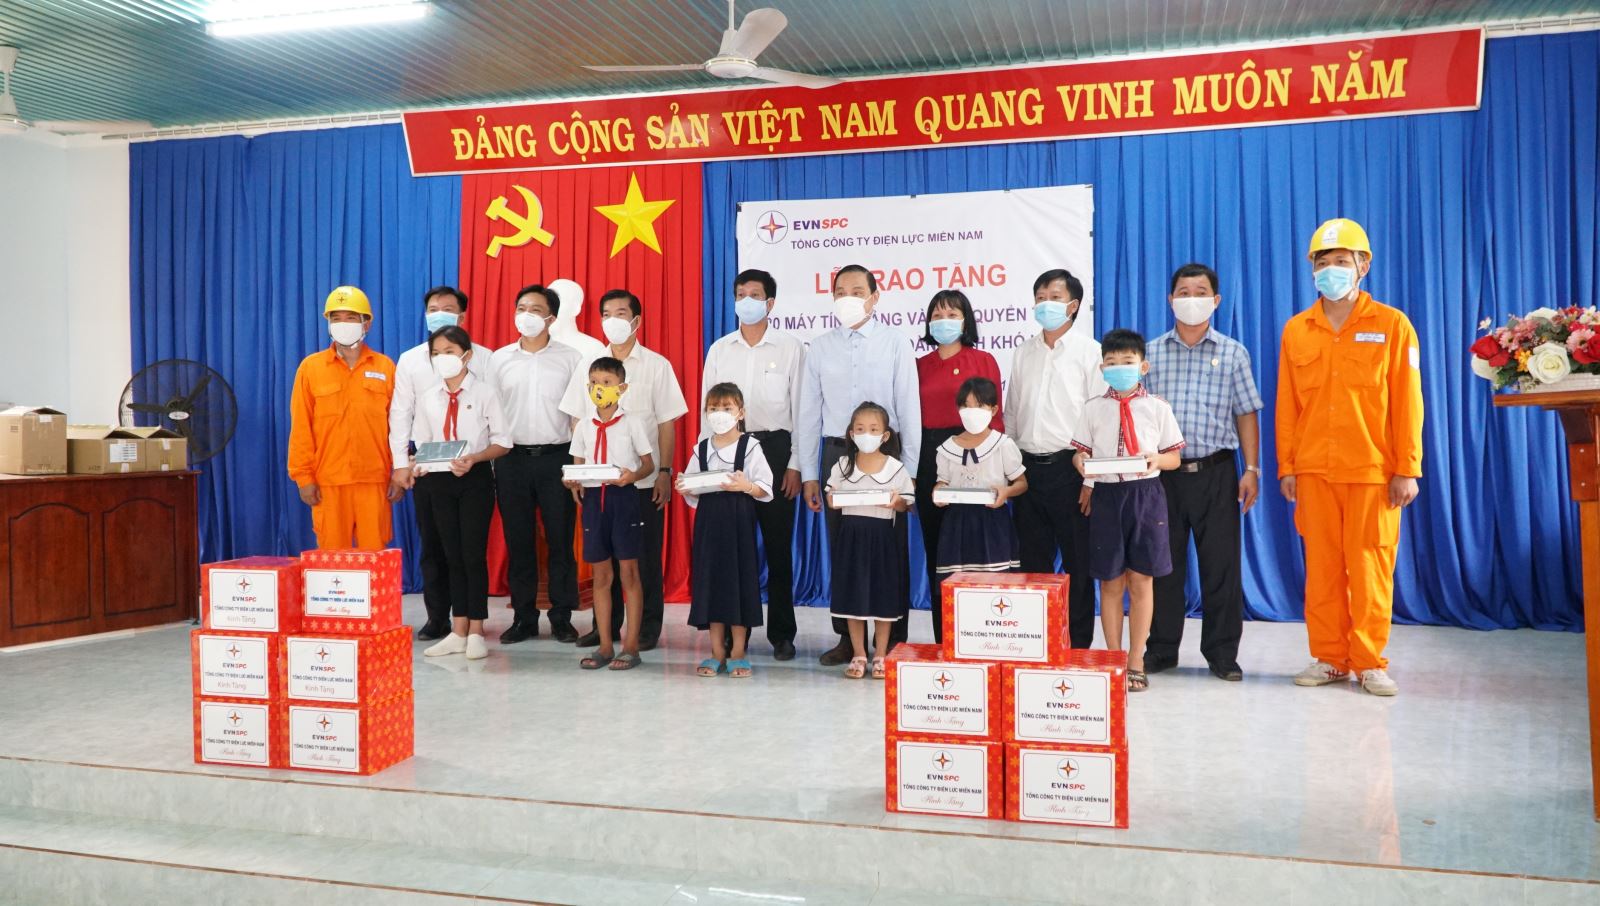 3.	Trao tặng 20 máy tính bảng và 1.000 quyển tập cho các em học sinh có hoàn cảnh khó khăn tại xã Thạnh Tây, huyện Tân Biên